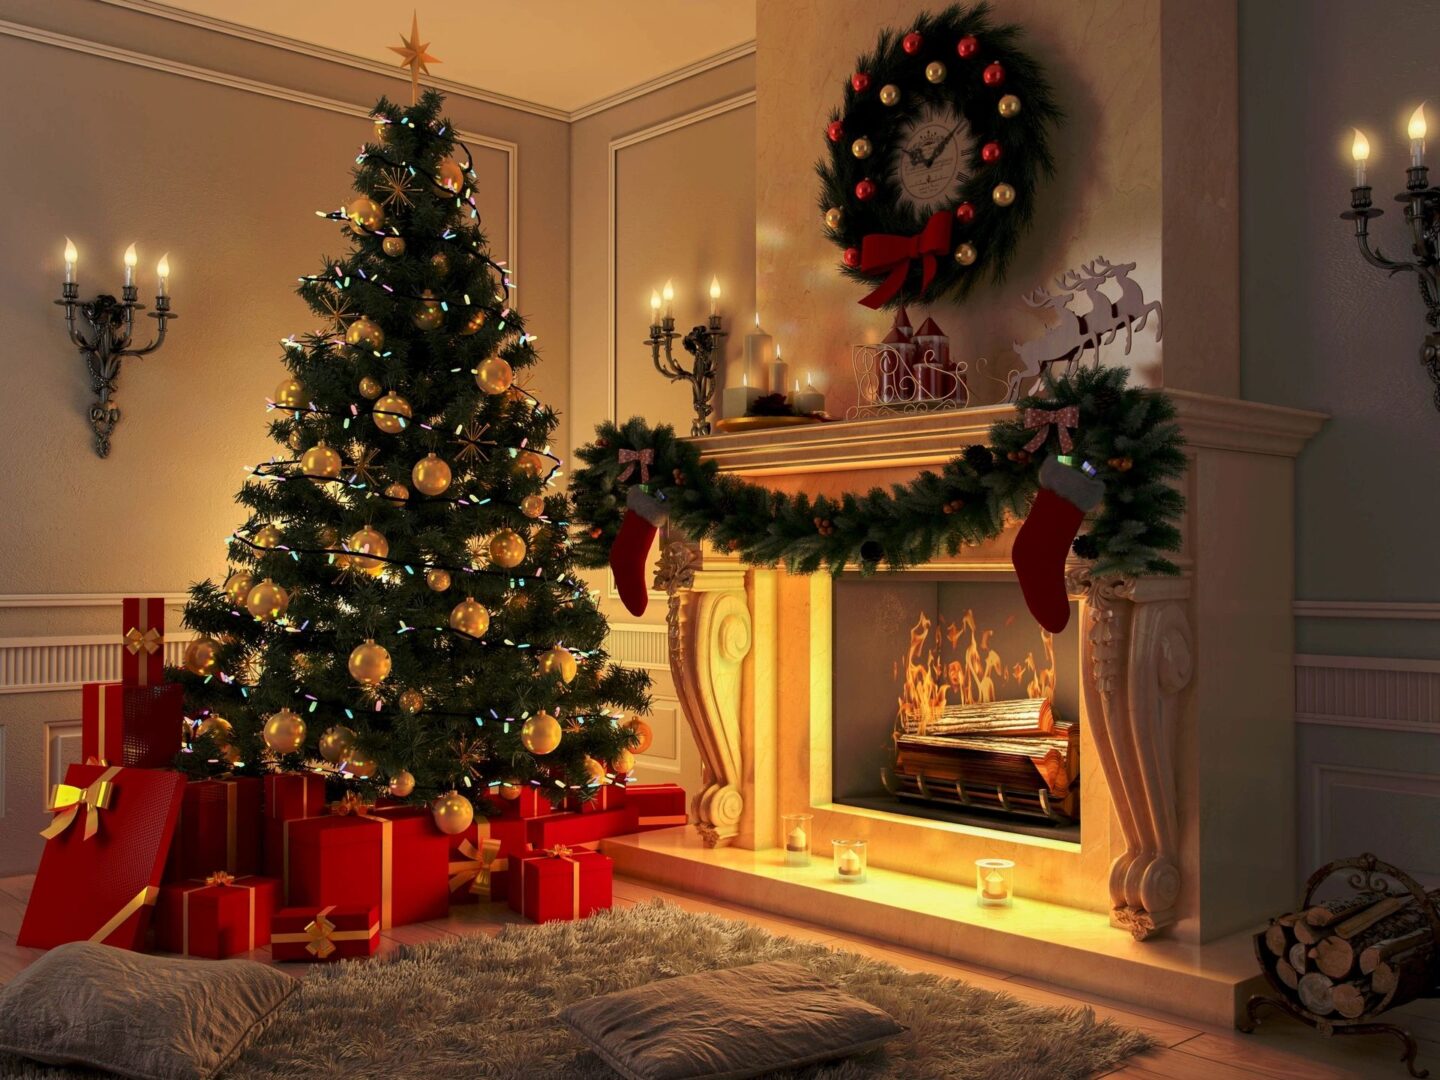 A huge Christmas tree near the fireplace